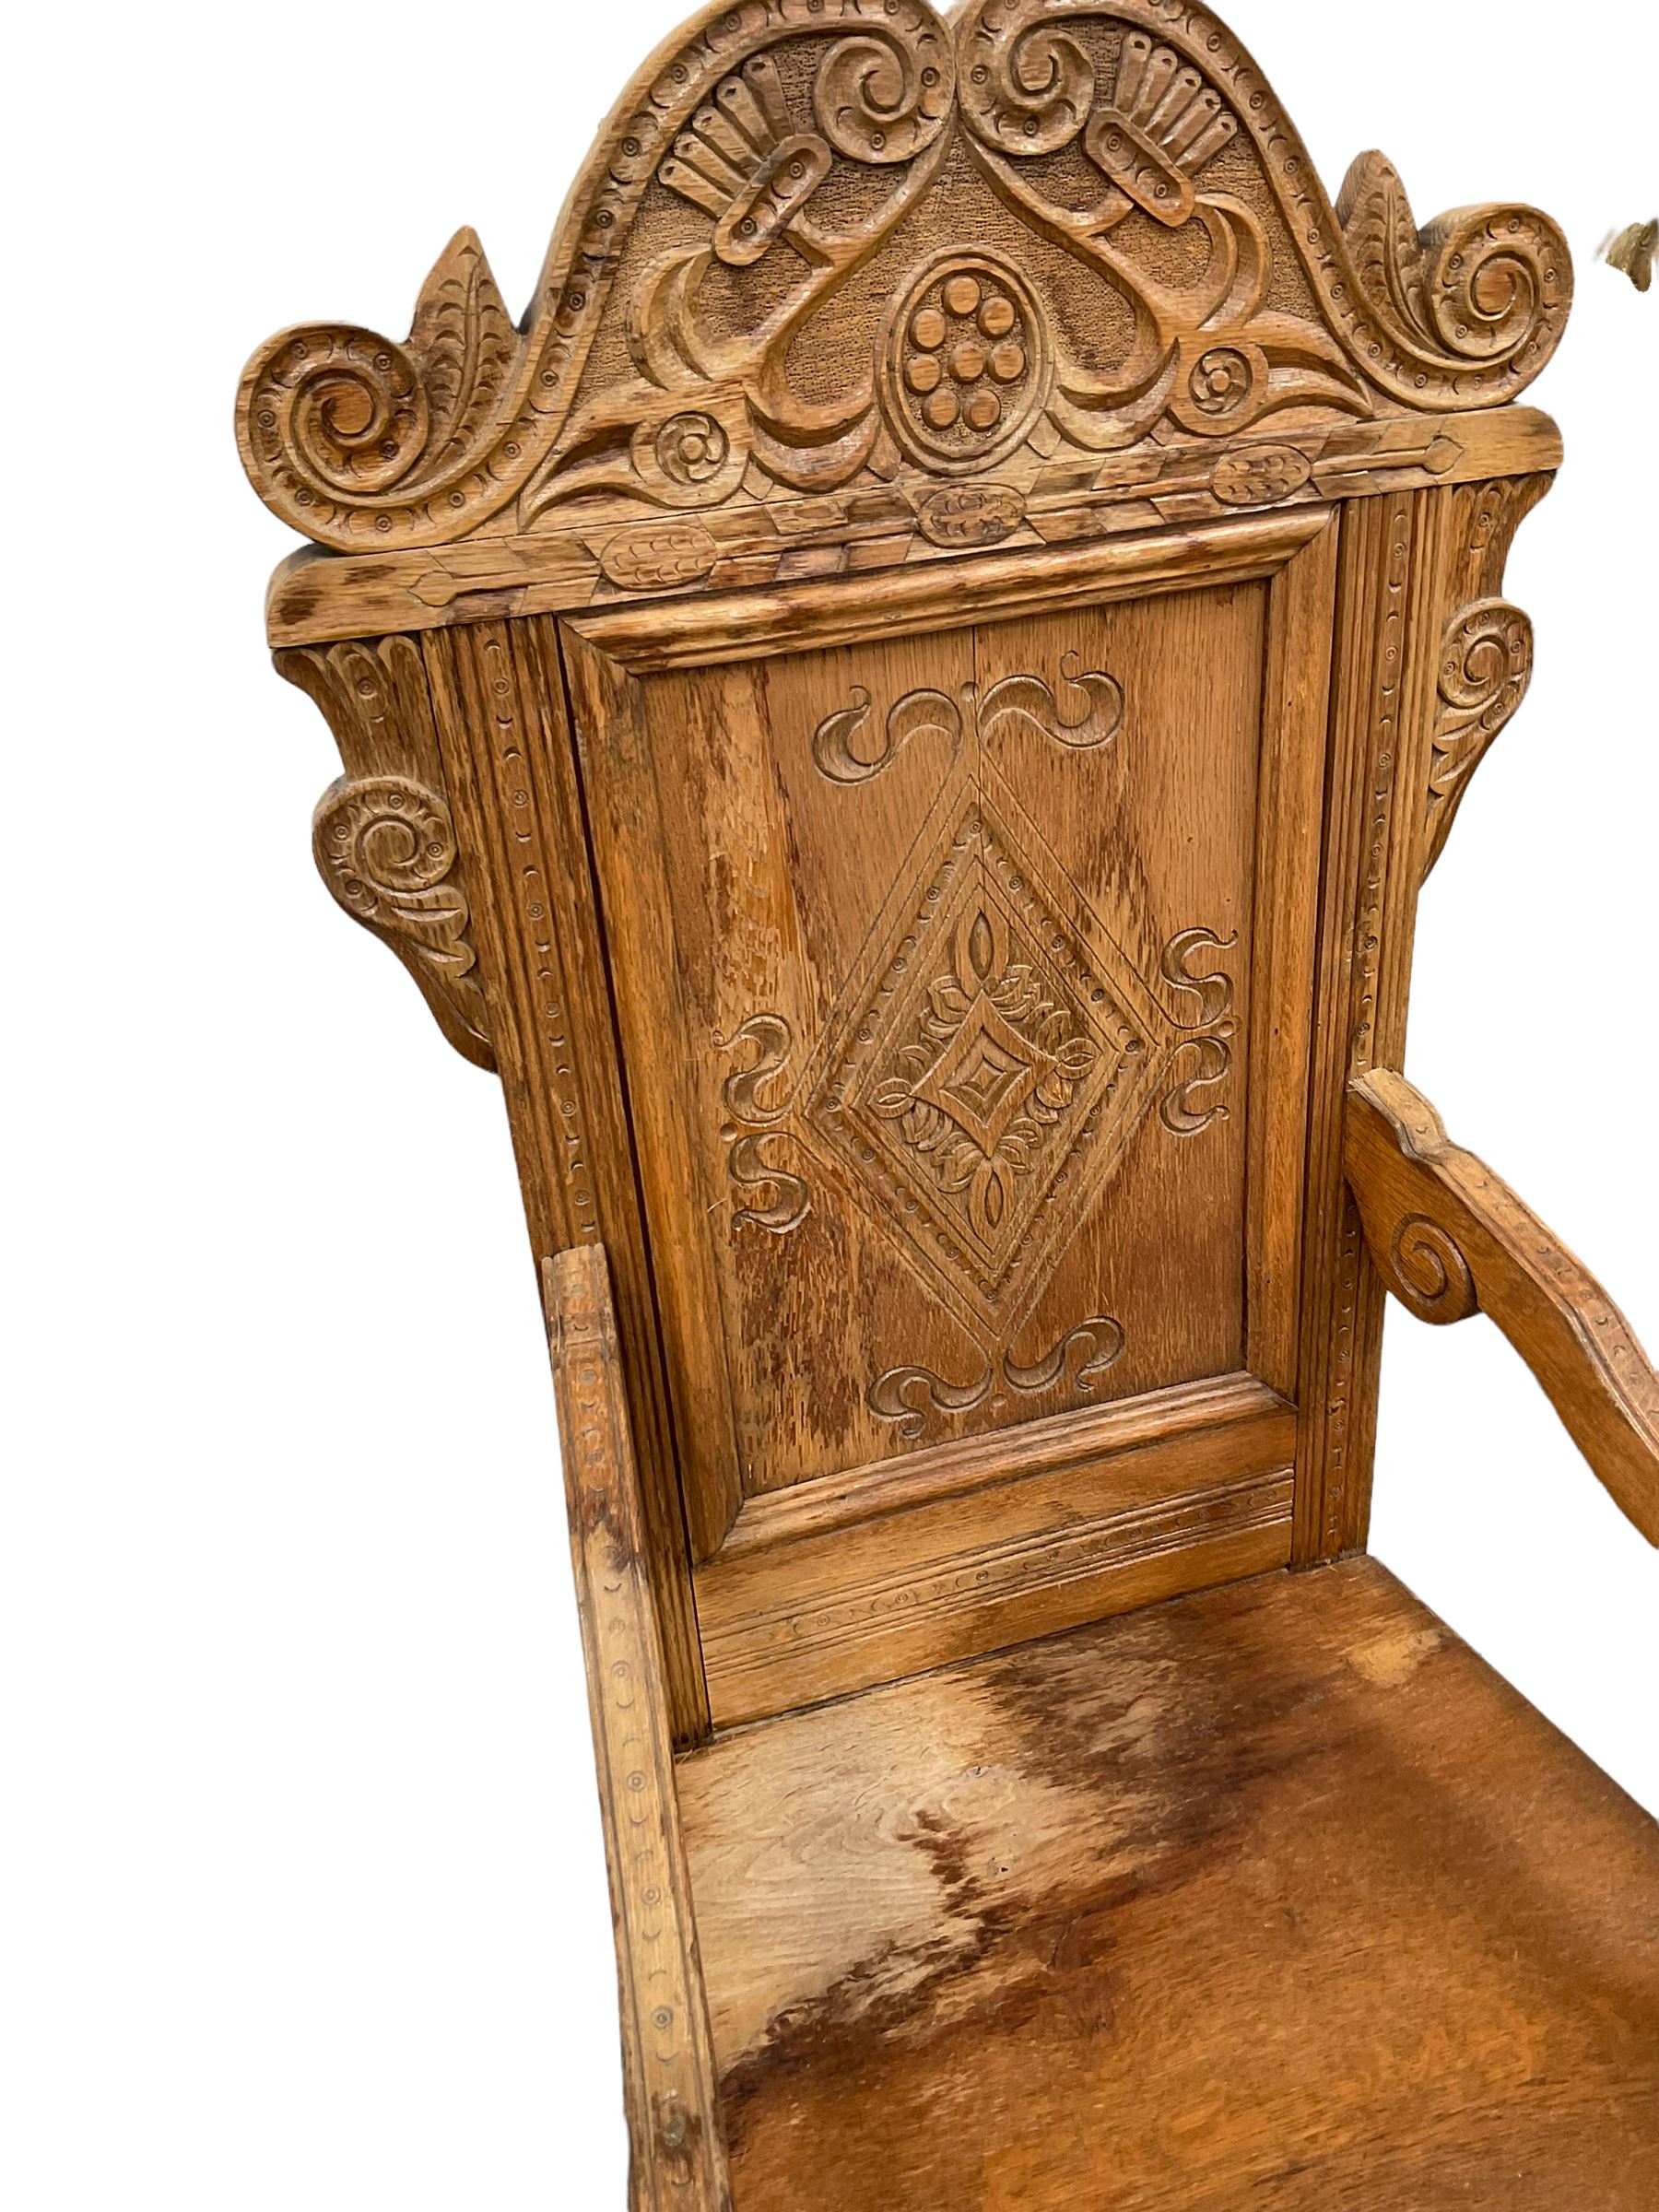 Set six 17th century style oak Wainscot chairs - Image 7 of 8